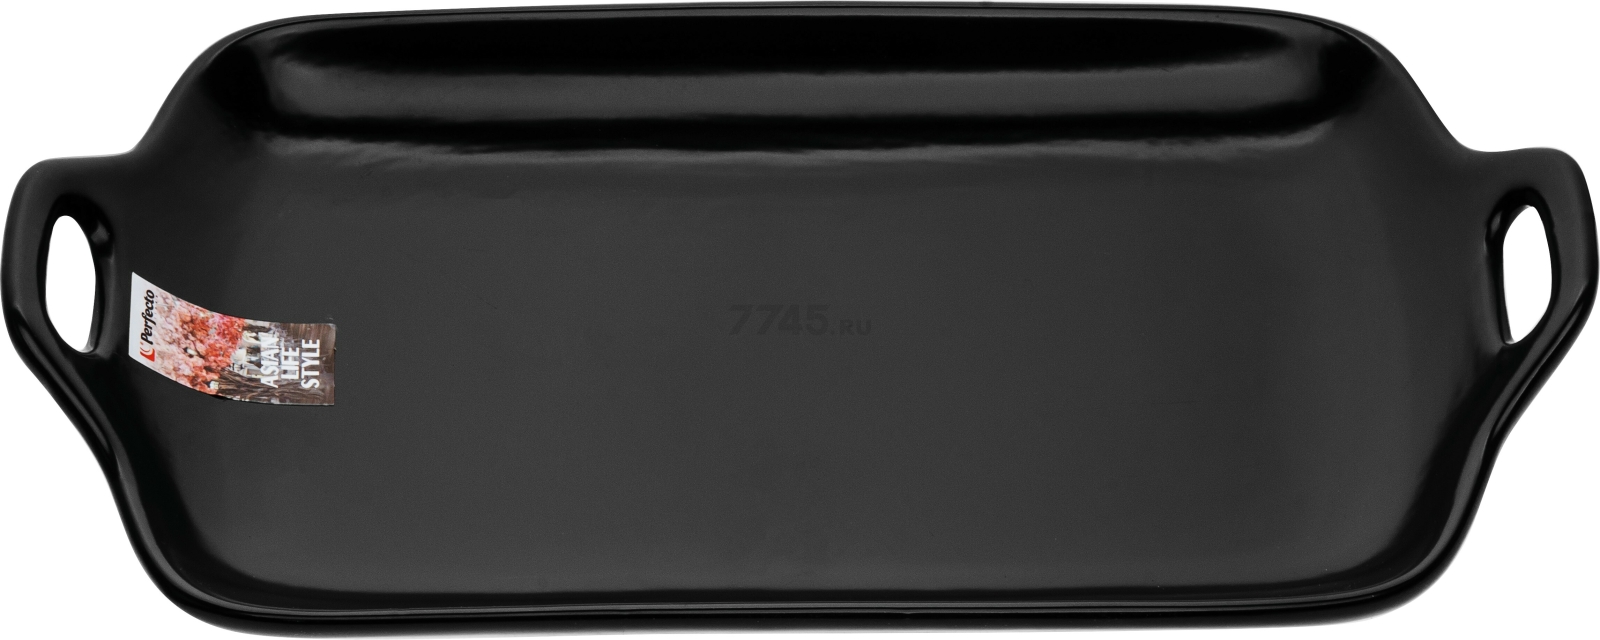 Блюдо керамическое прямоугольное PERFECTO LINEA Asian 29х17х4,5 см черный (17-102901)